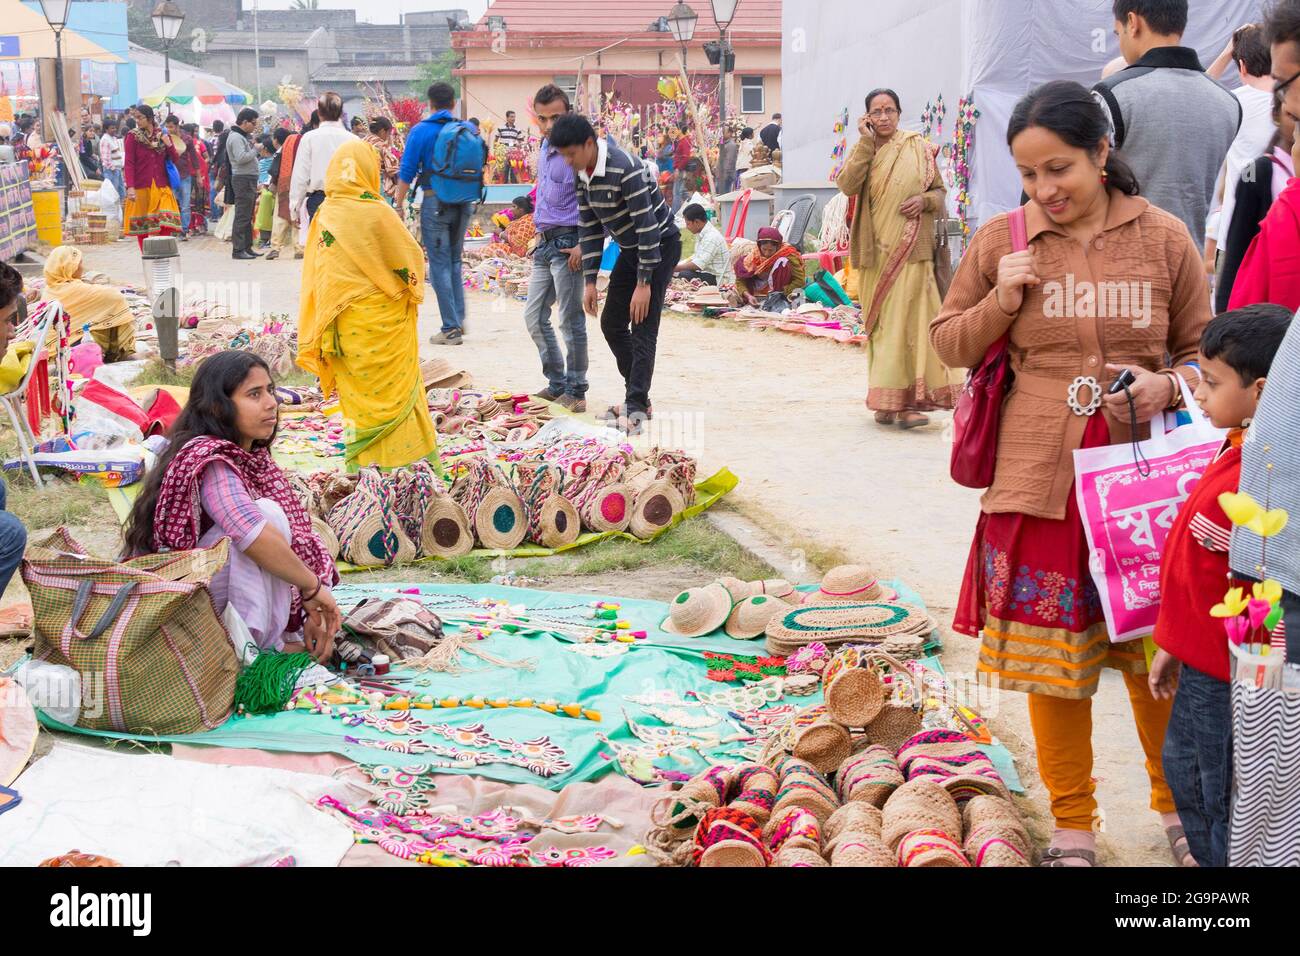 KALKUTTA, WESTBENGALEN, INDIEN - DEZEMBER 12. 2014 : nicht identifizierte indische Frauen, die handgemachte Jutepuppen und Kunsthandwerk während der Kunsthandwerkermesse handeln. Stockfoto